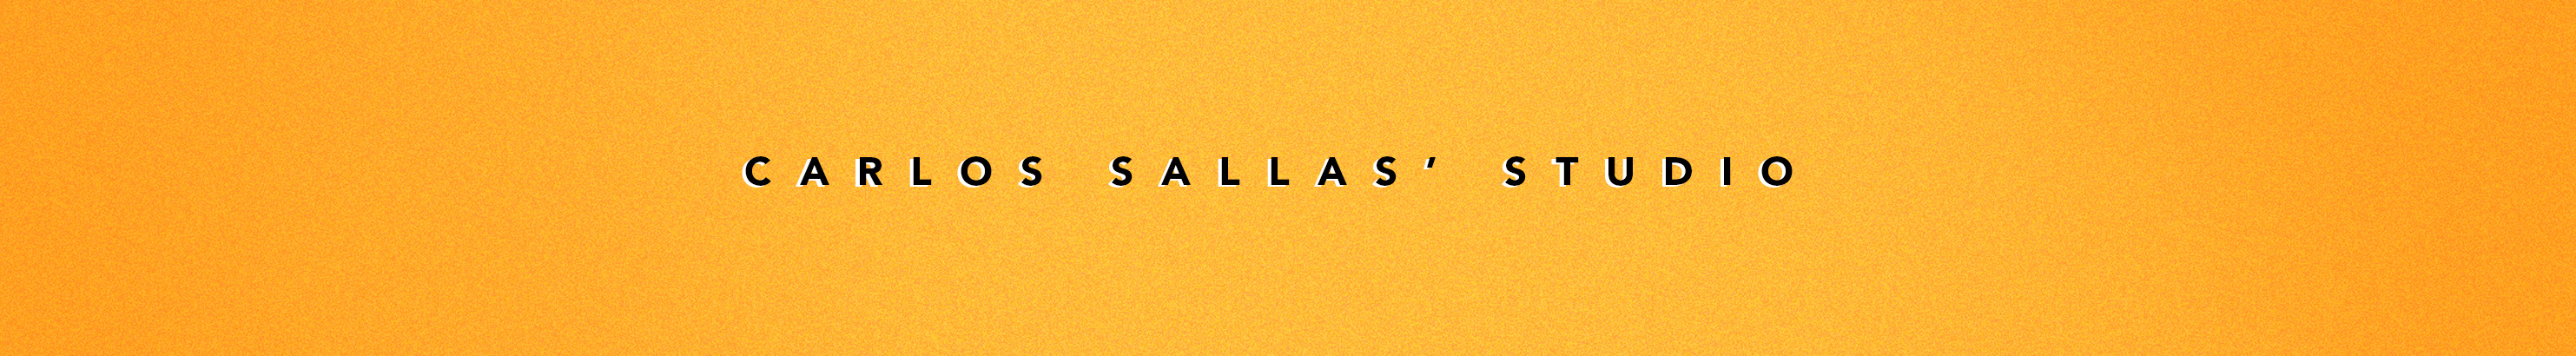 Carlos Sallas profil başlığı